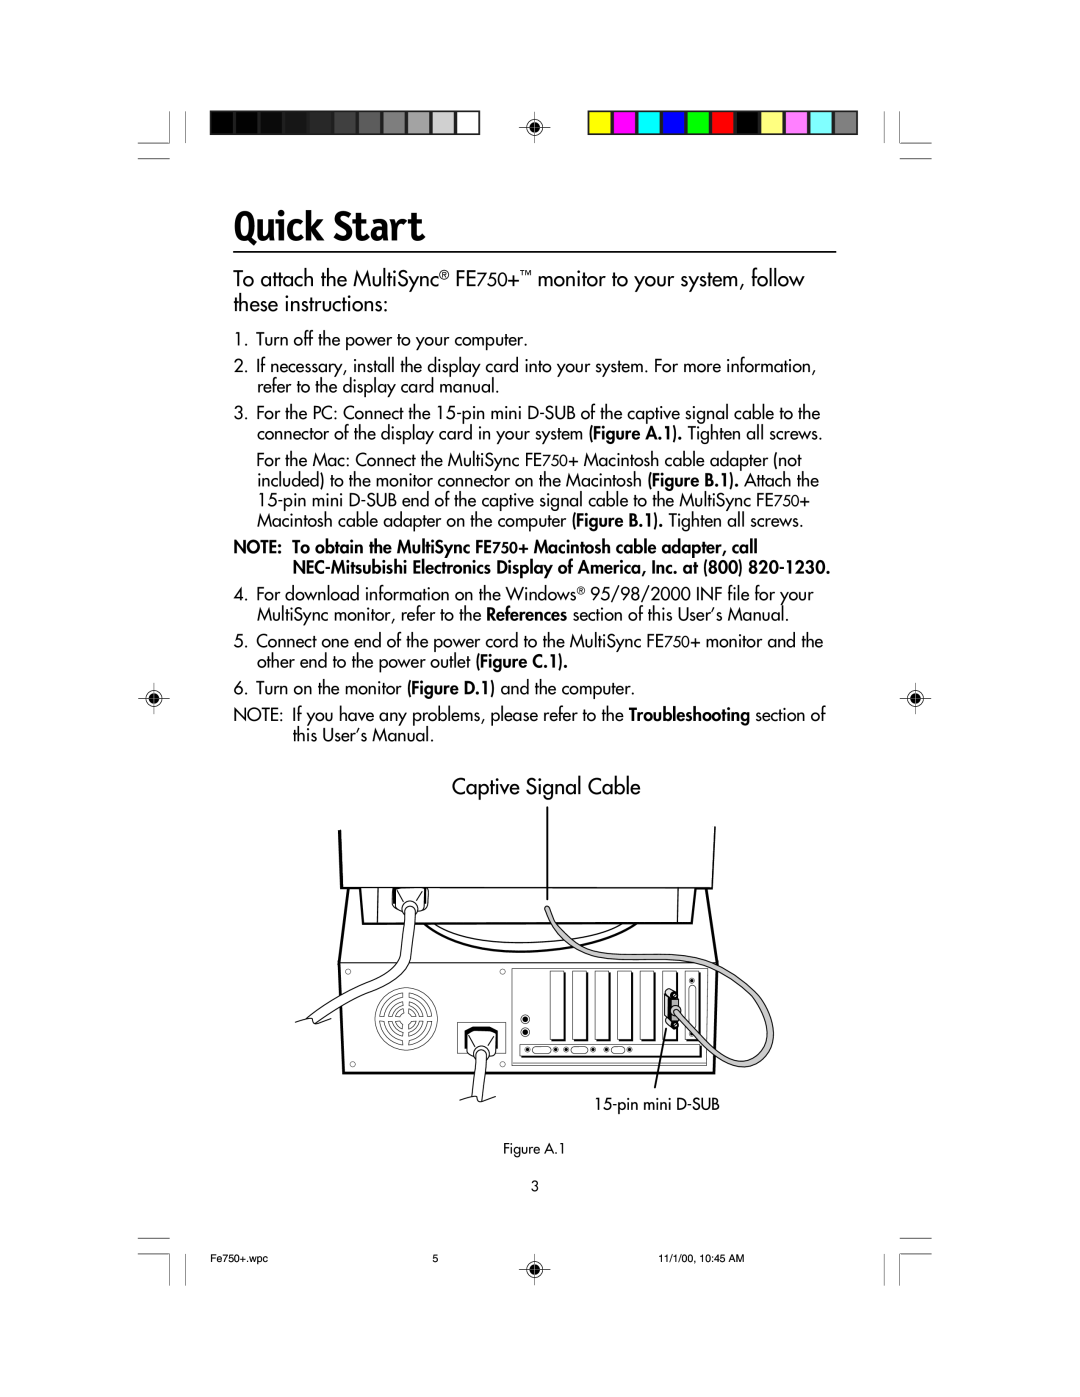 NEC FE750 Plus user manual Quick Start 